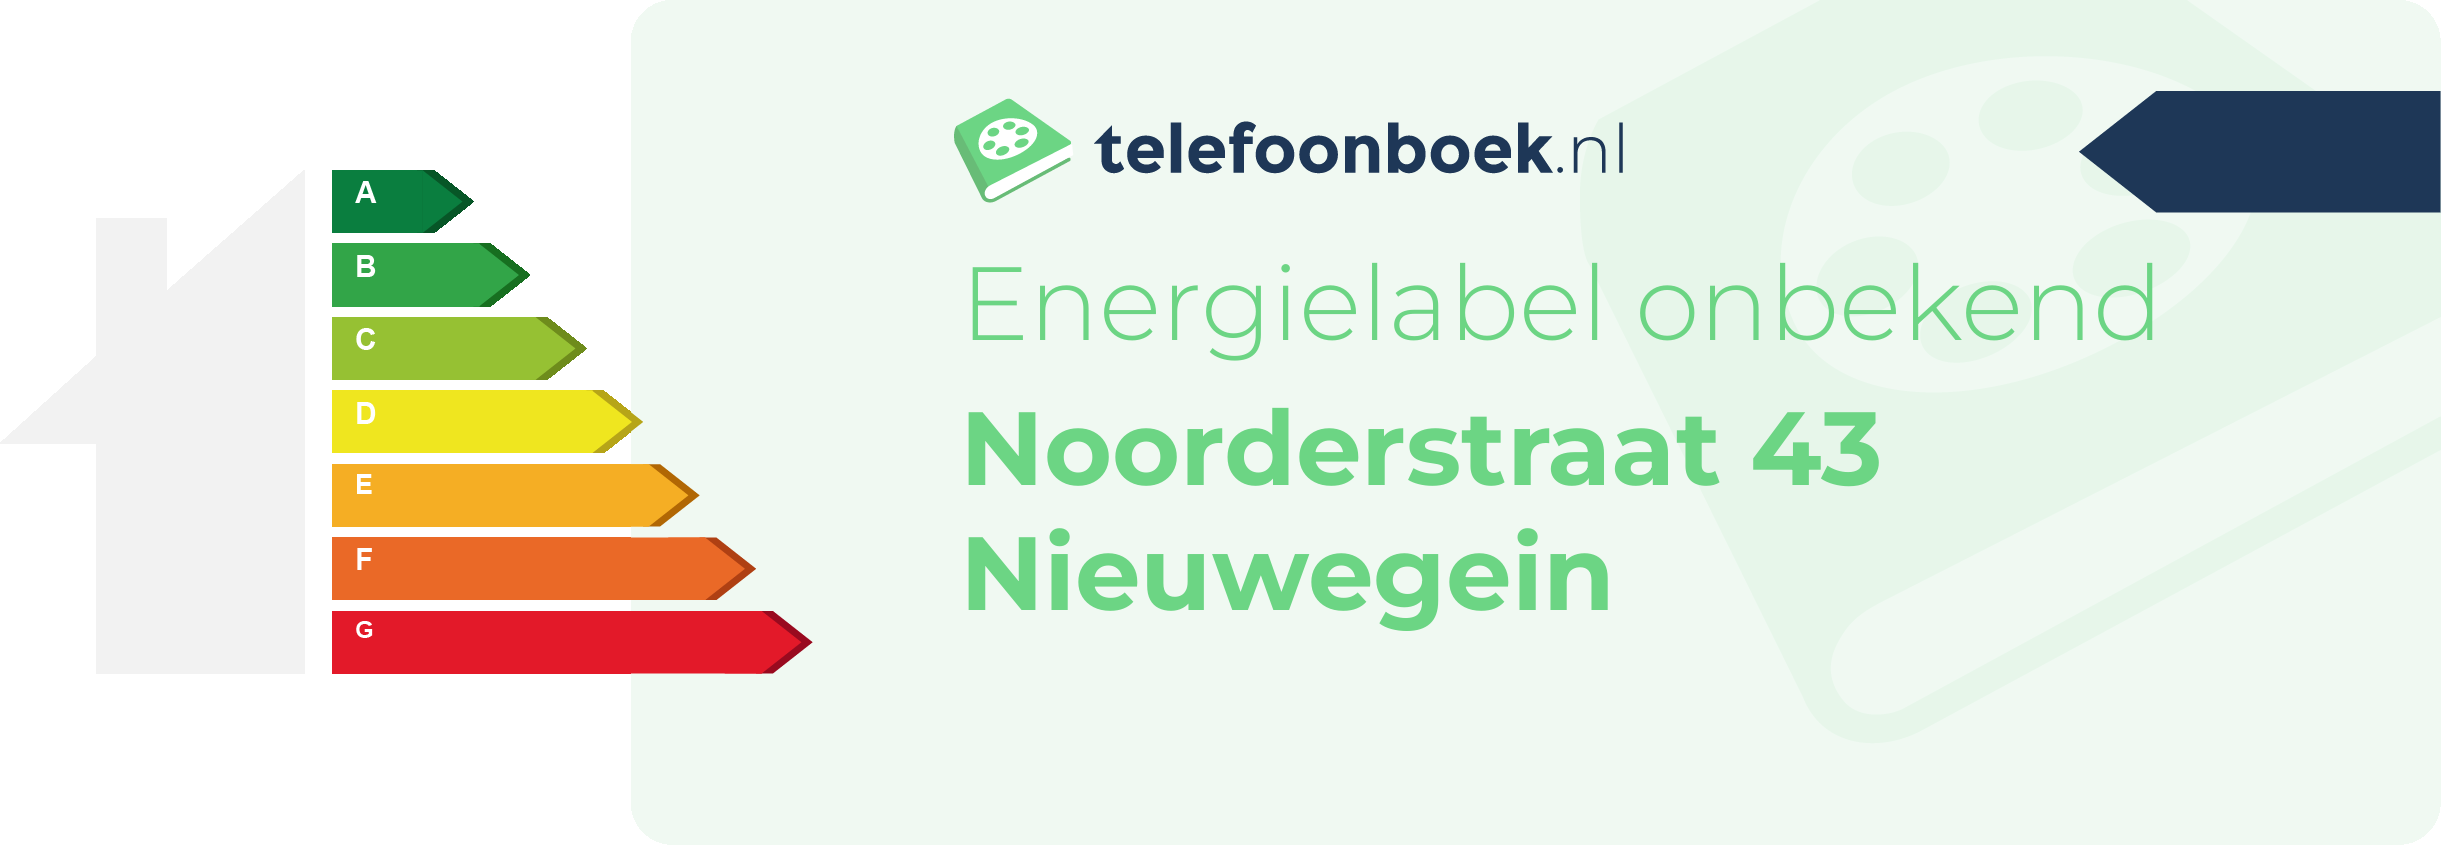 Energielabel Noorderstraat 43 Nieuwegein